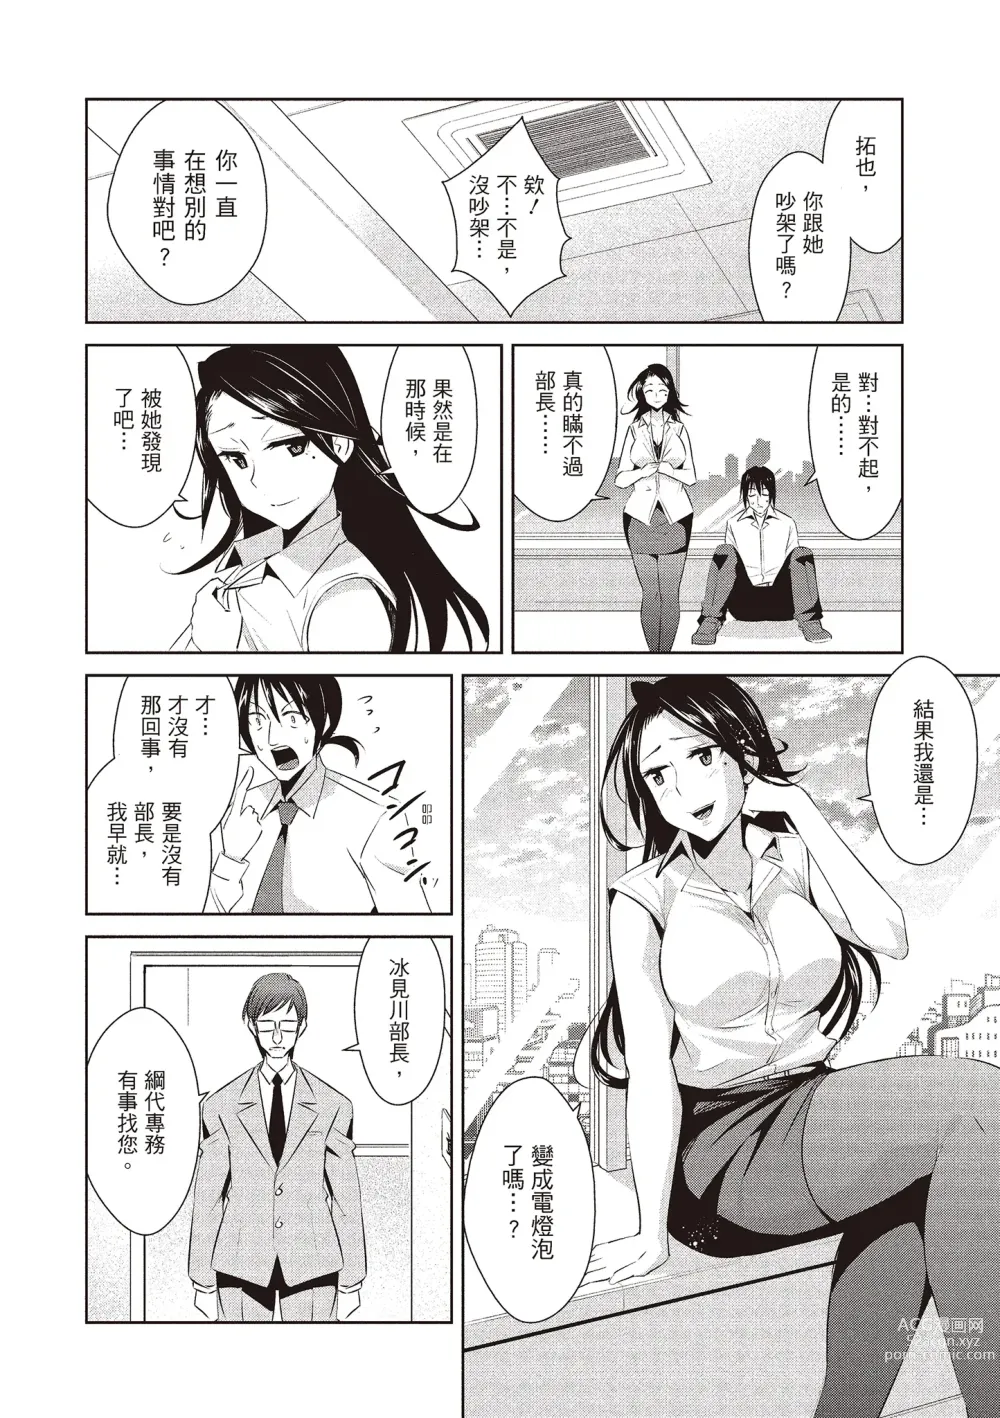 Page 166 of manga 朋友間的淫事